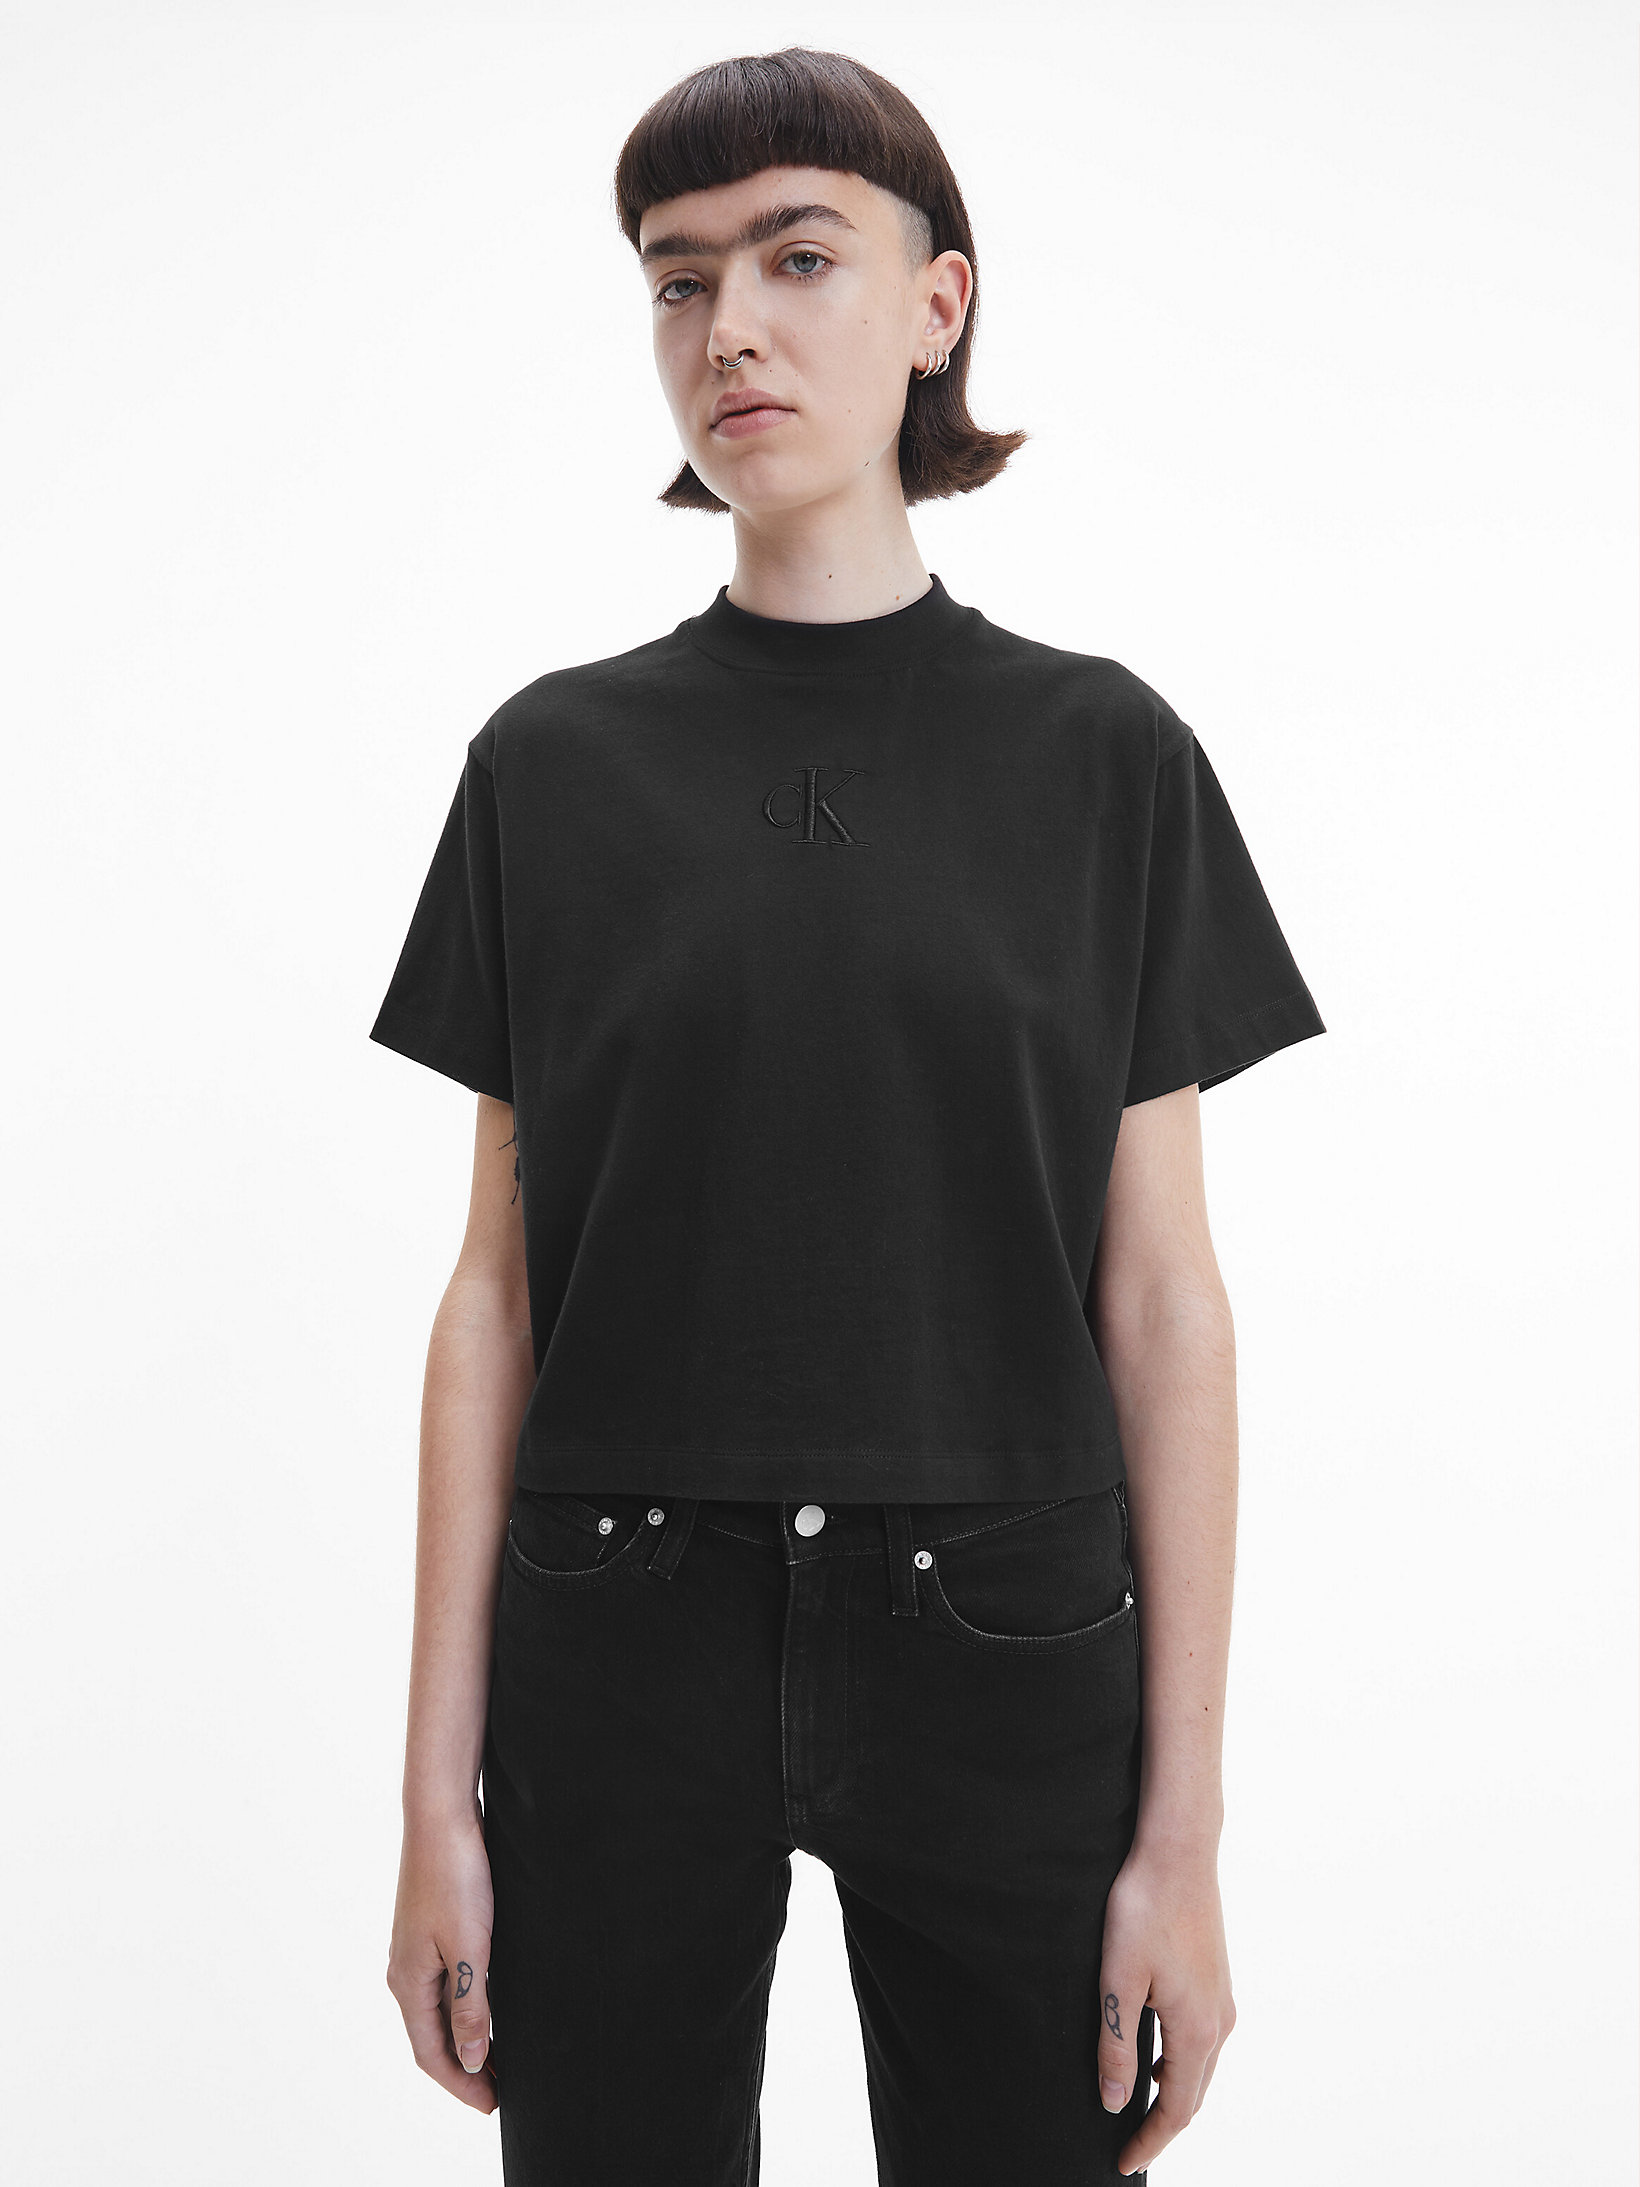 CK Black Relaxed T-Shirt undefined Damen Calvin Klein